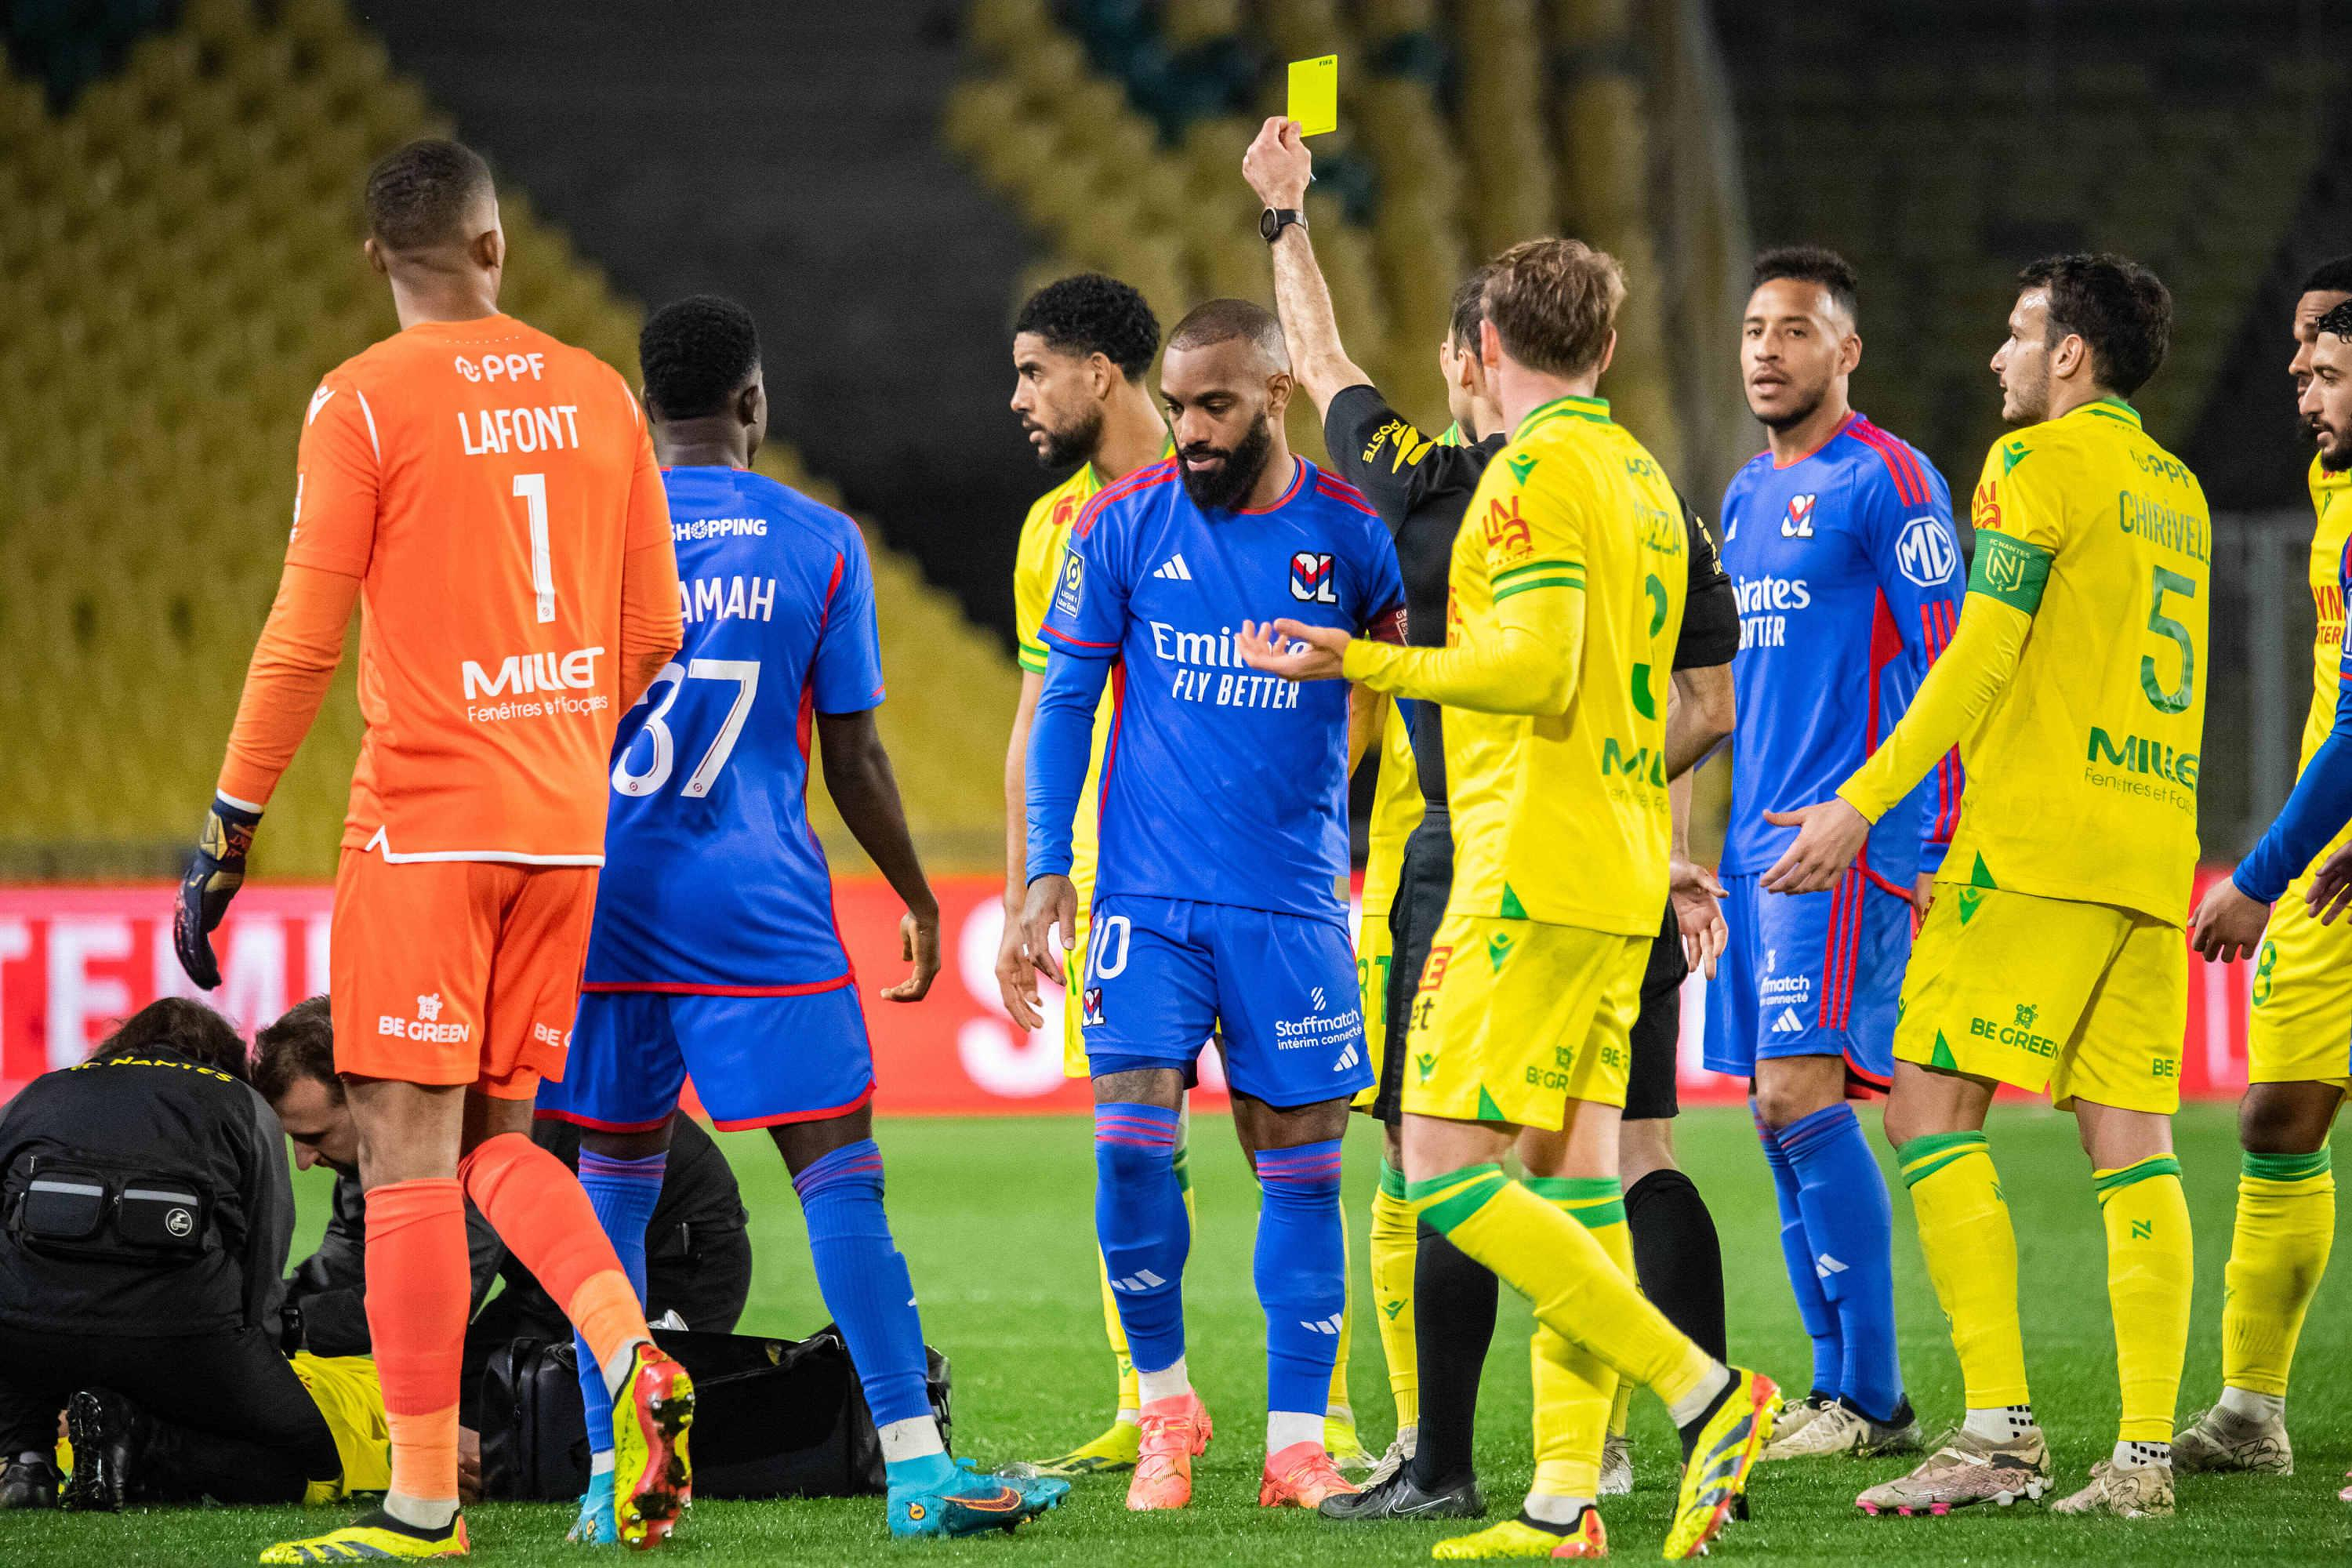 Nantes-Lyon: “I have the balls”, for Kombouaré, Lacazette’s fault deserved red